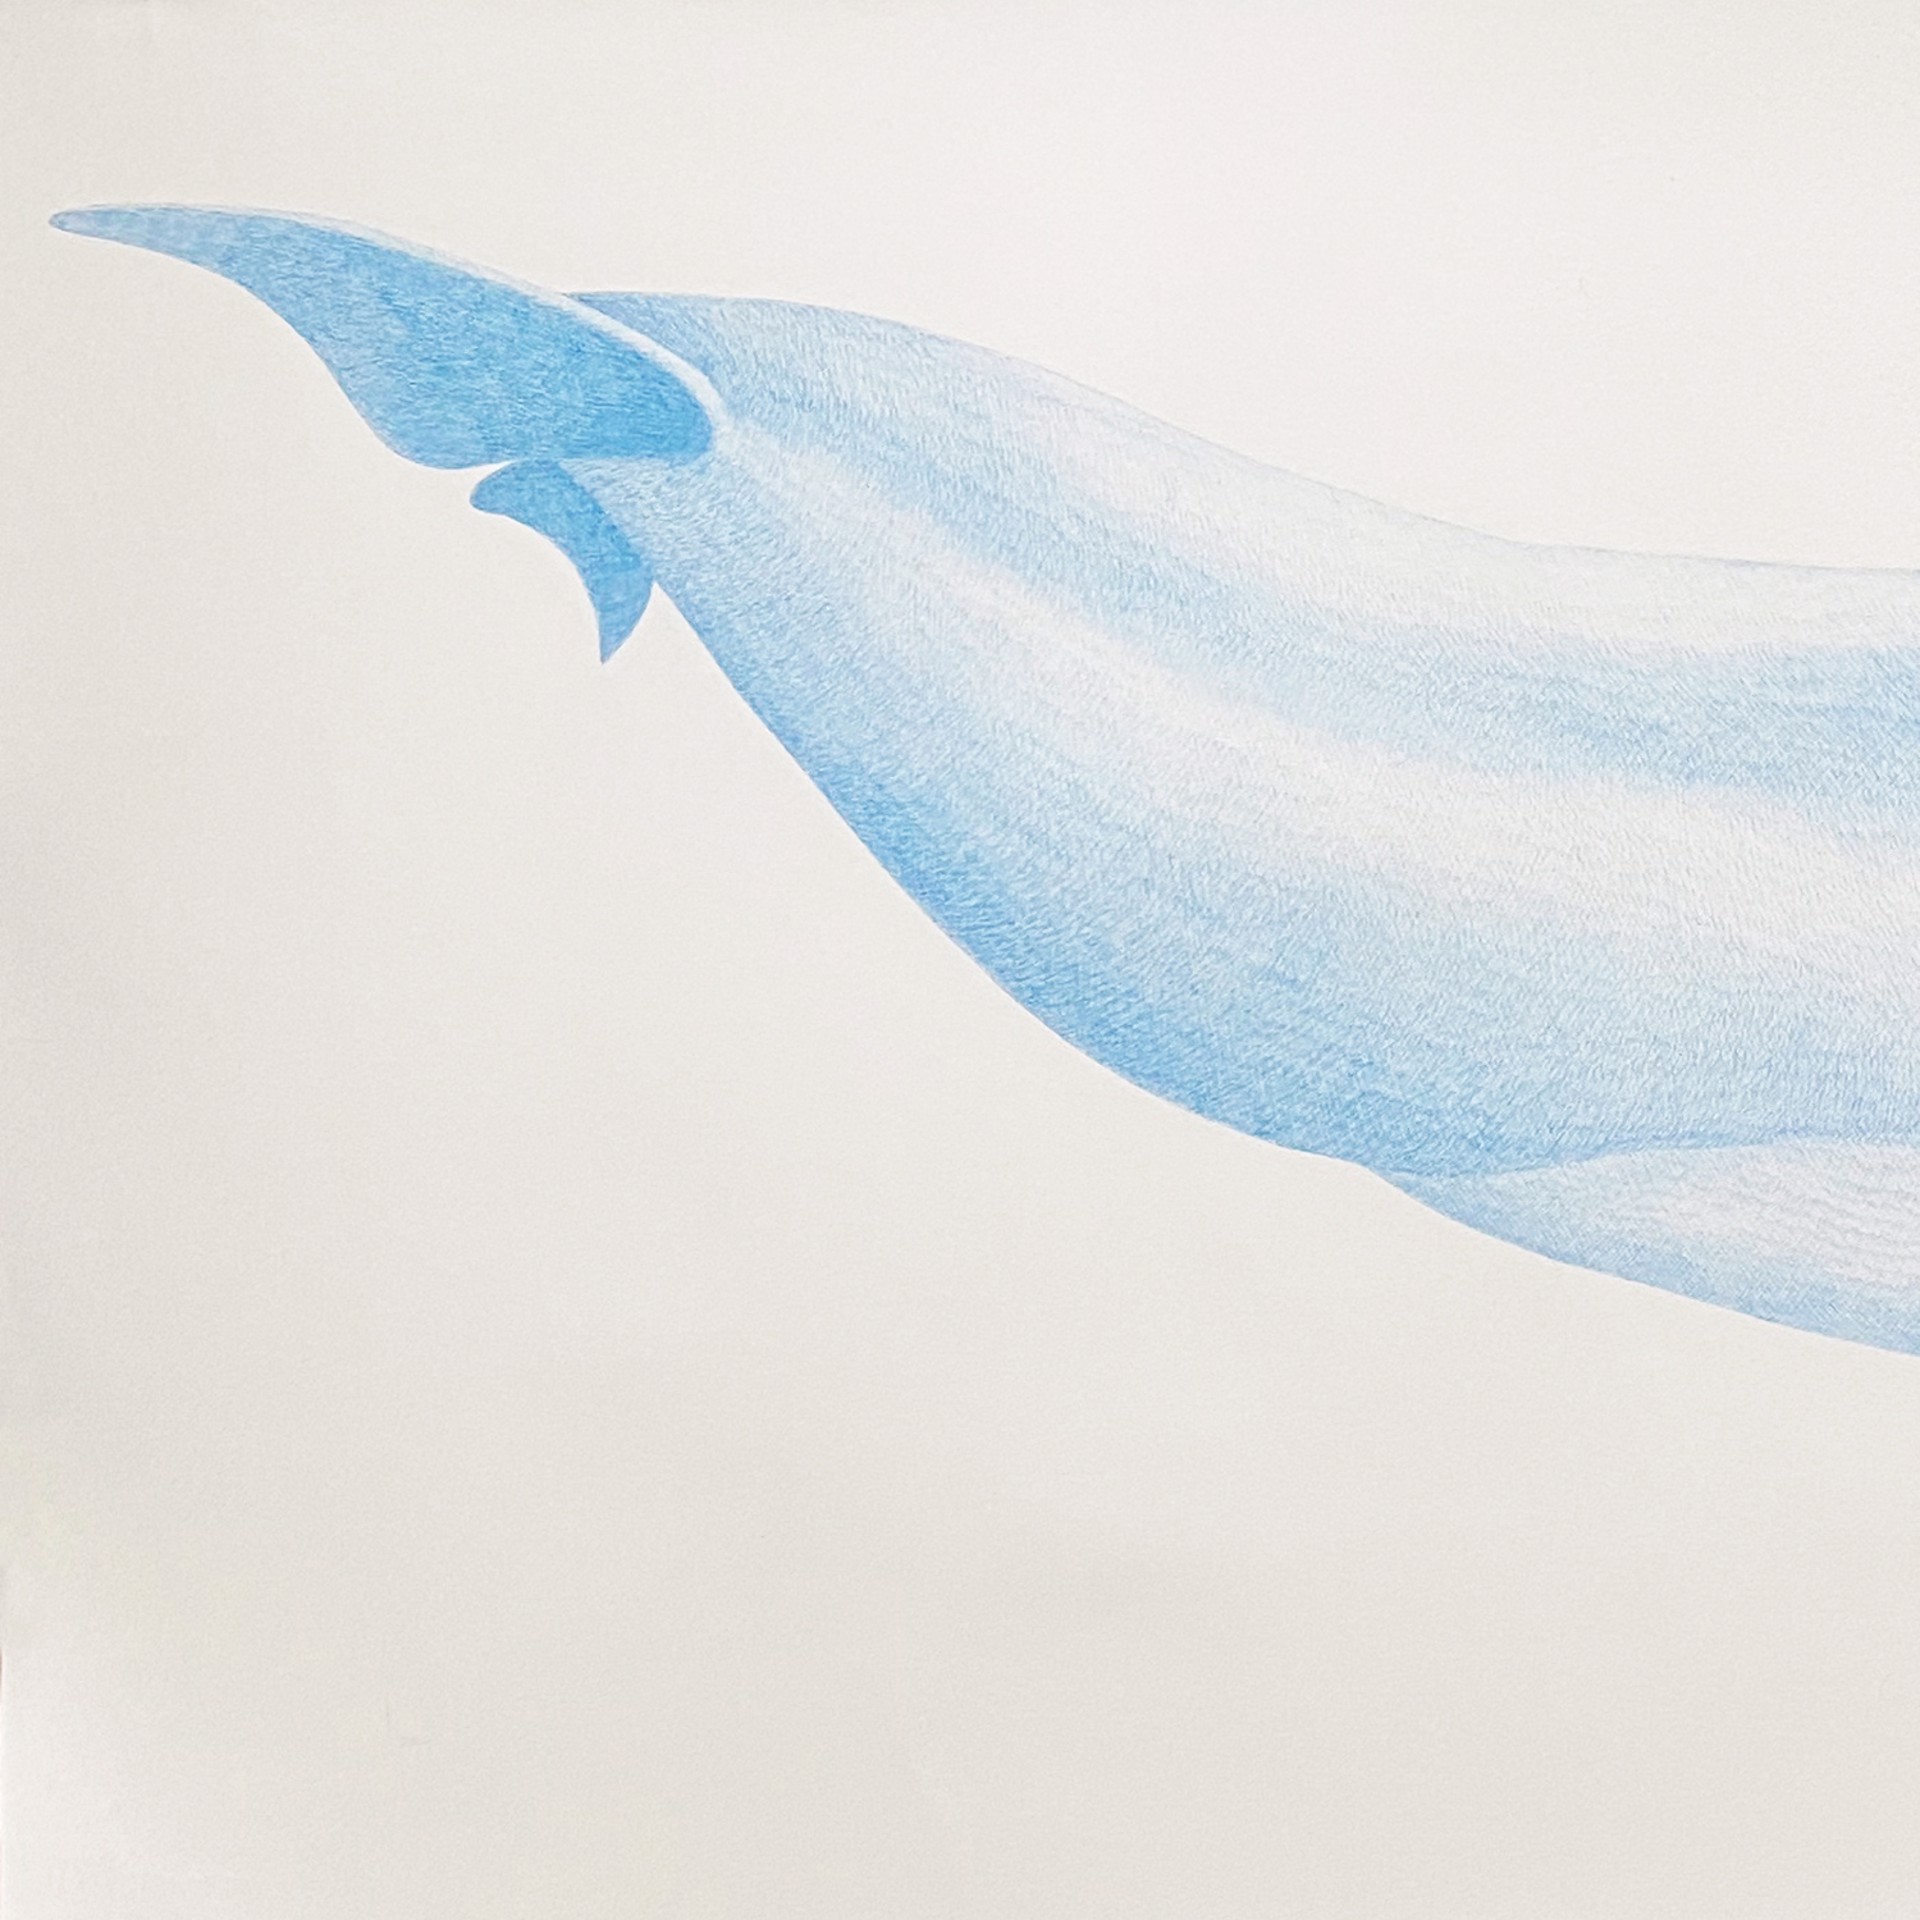 Bottlenose Dolphin by Hannah Hanlon